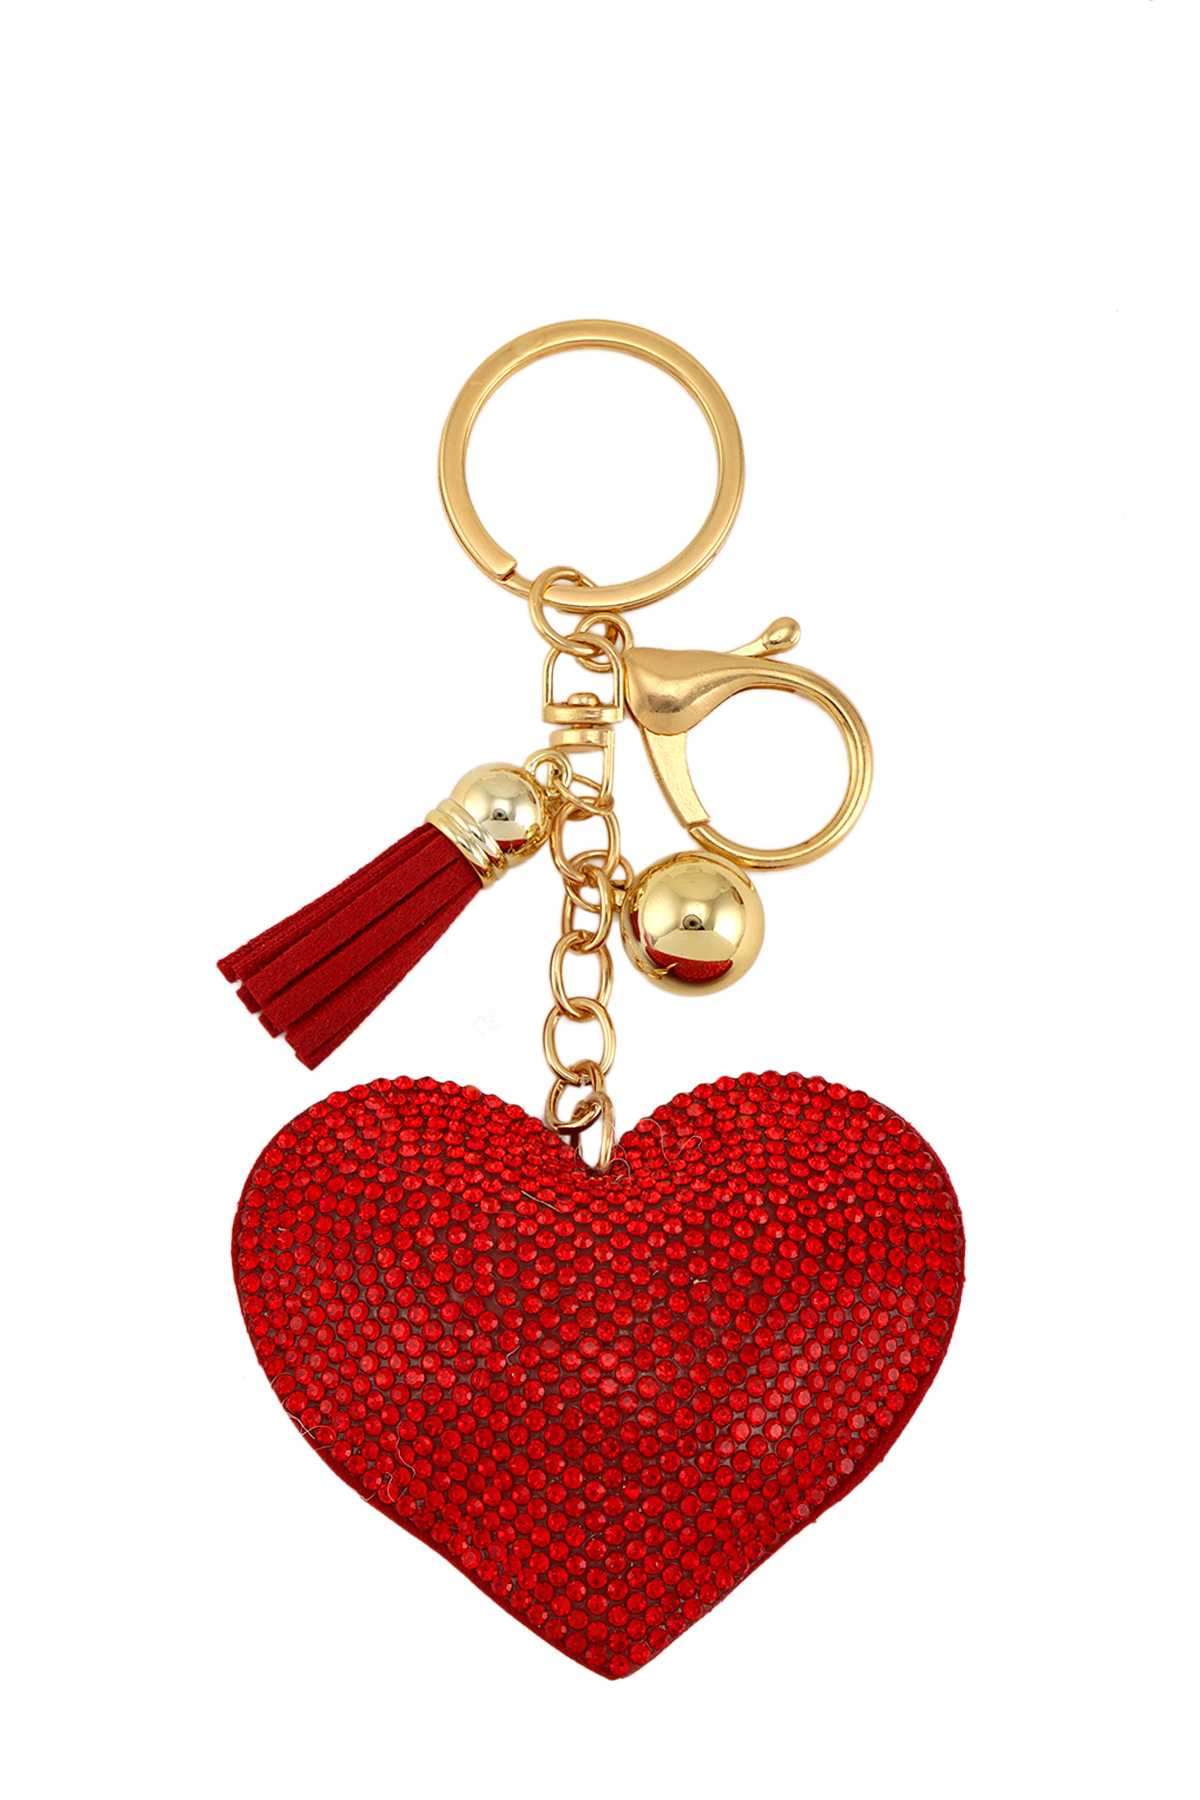 Rhinestone Heart Shape Key Chain